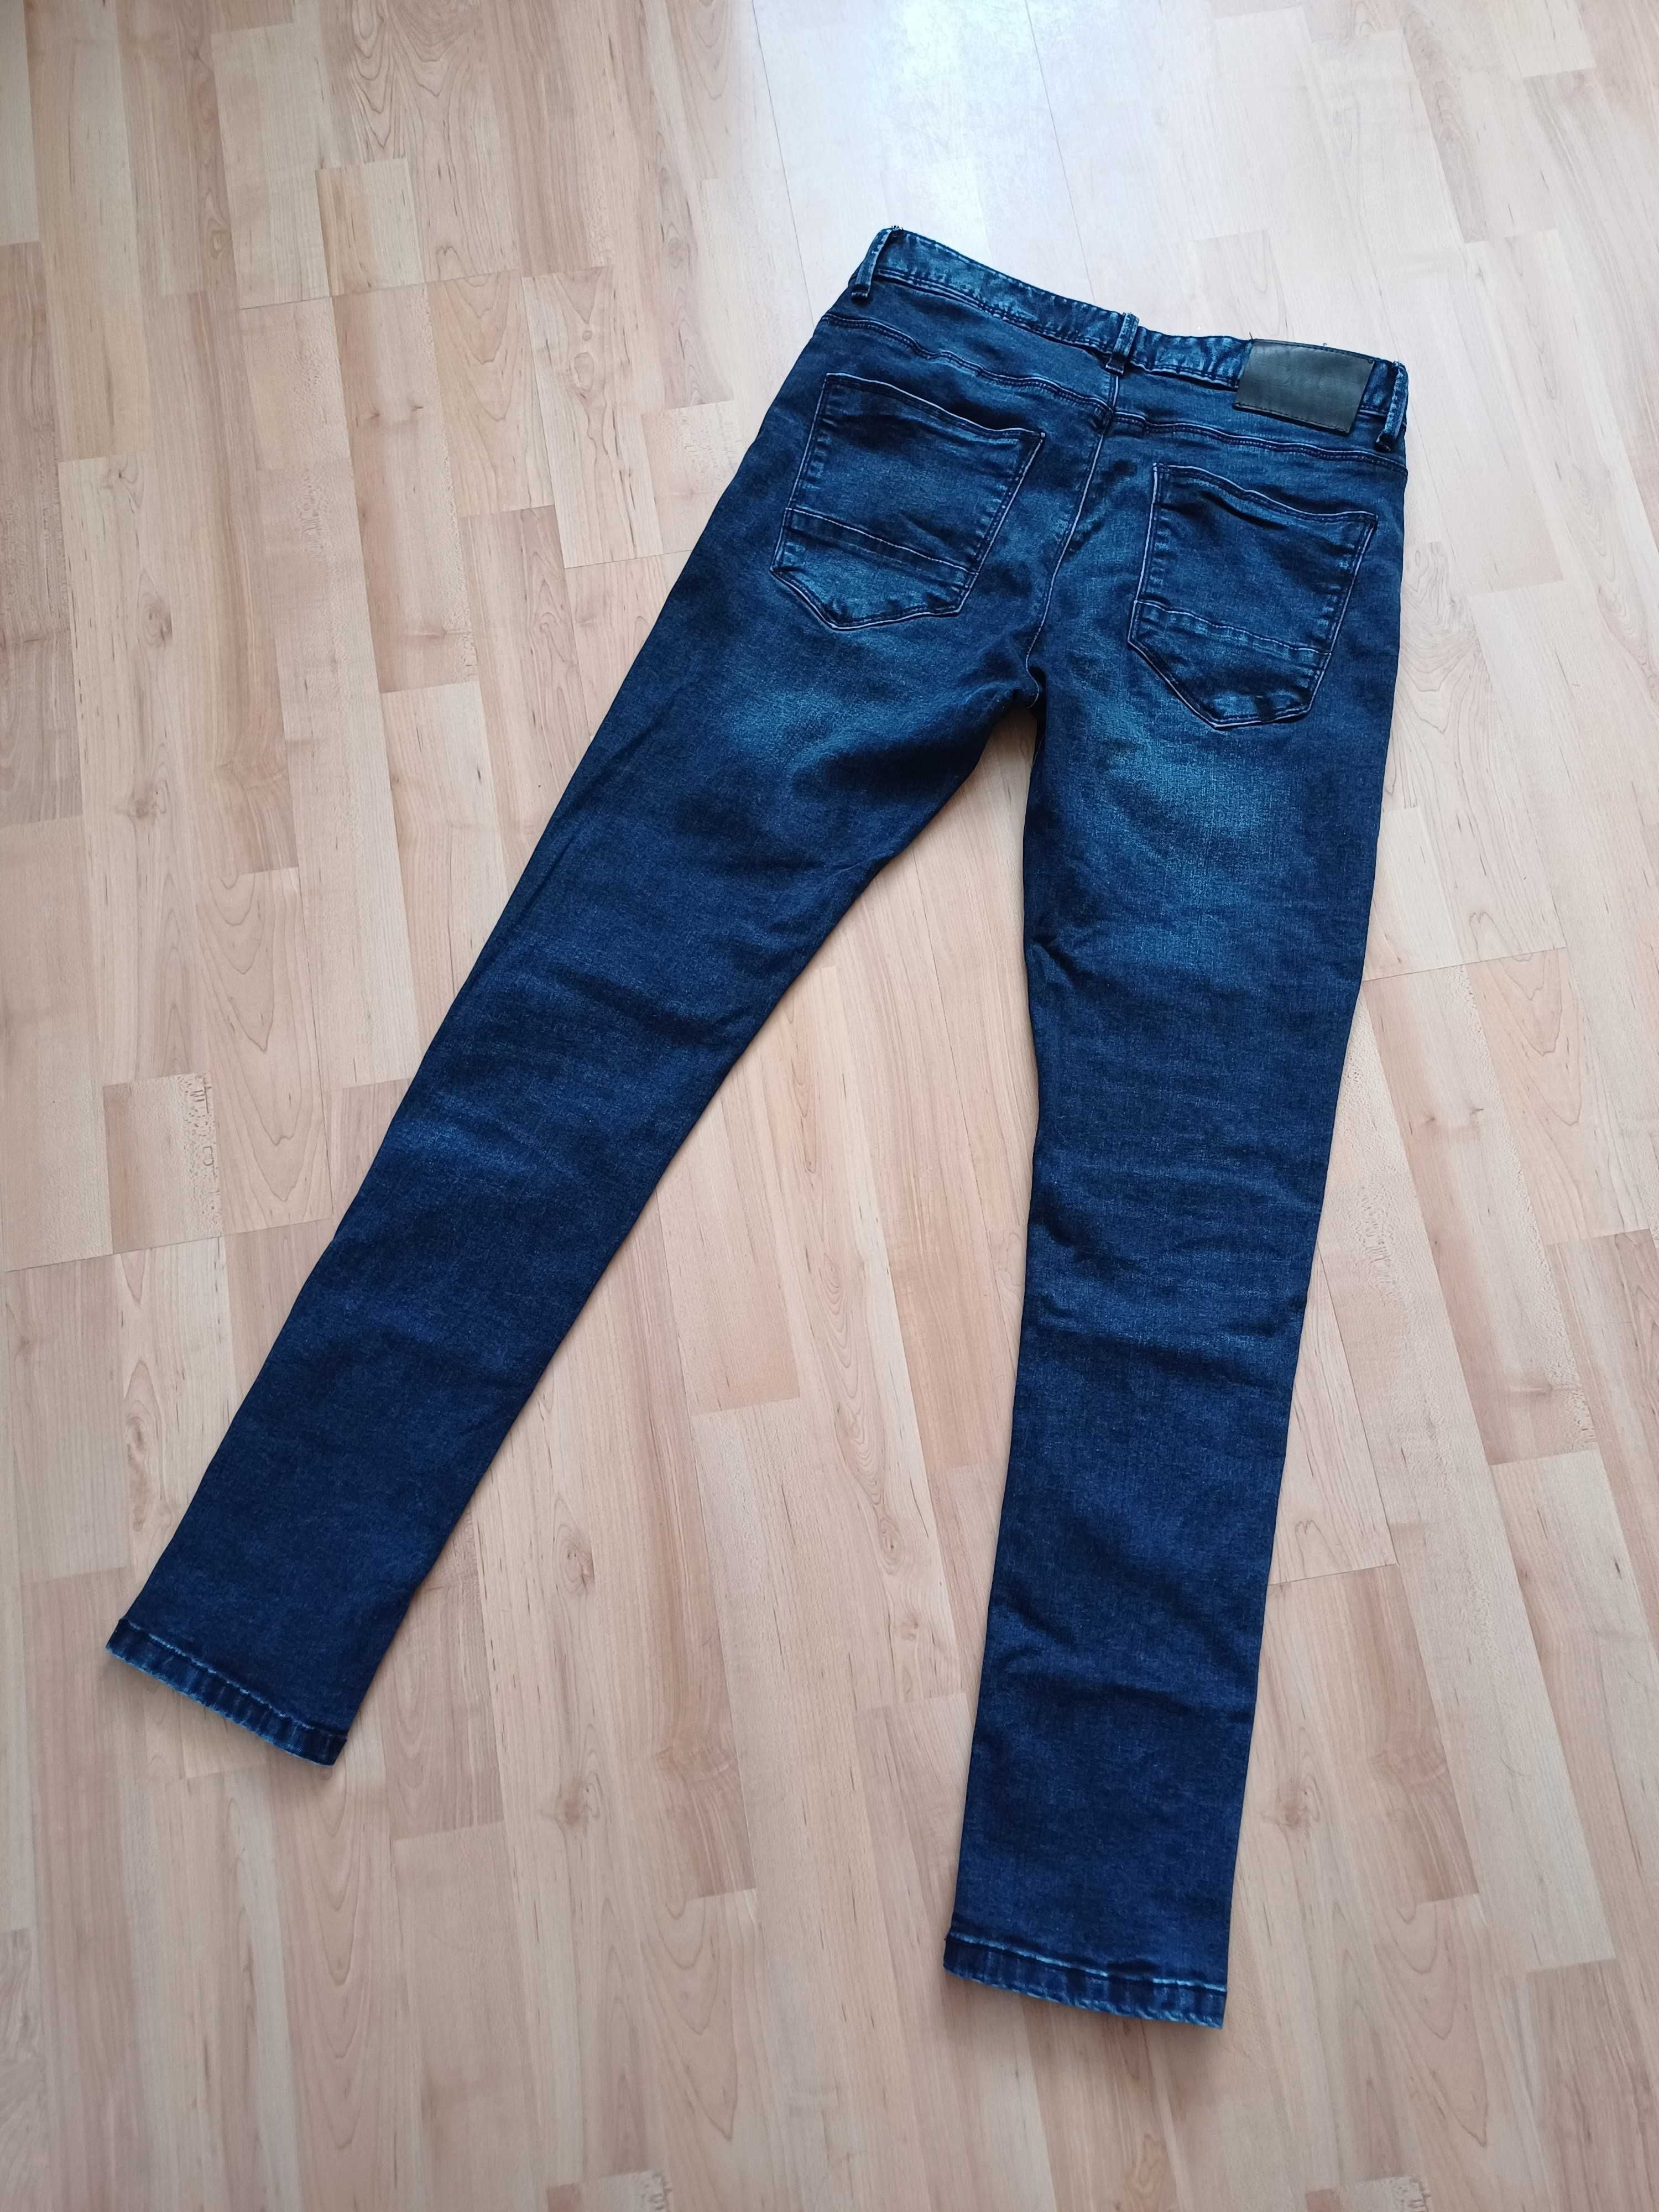 Spodnie długie męskie jeans granatowe wycierane na guziki 40/L